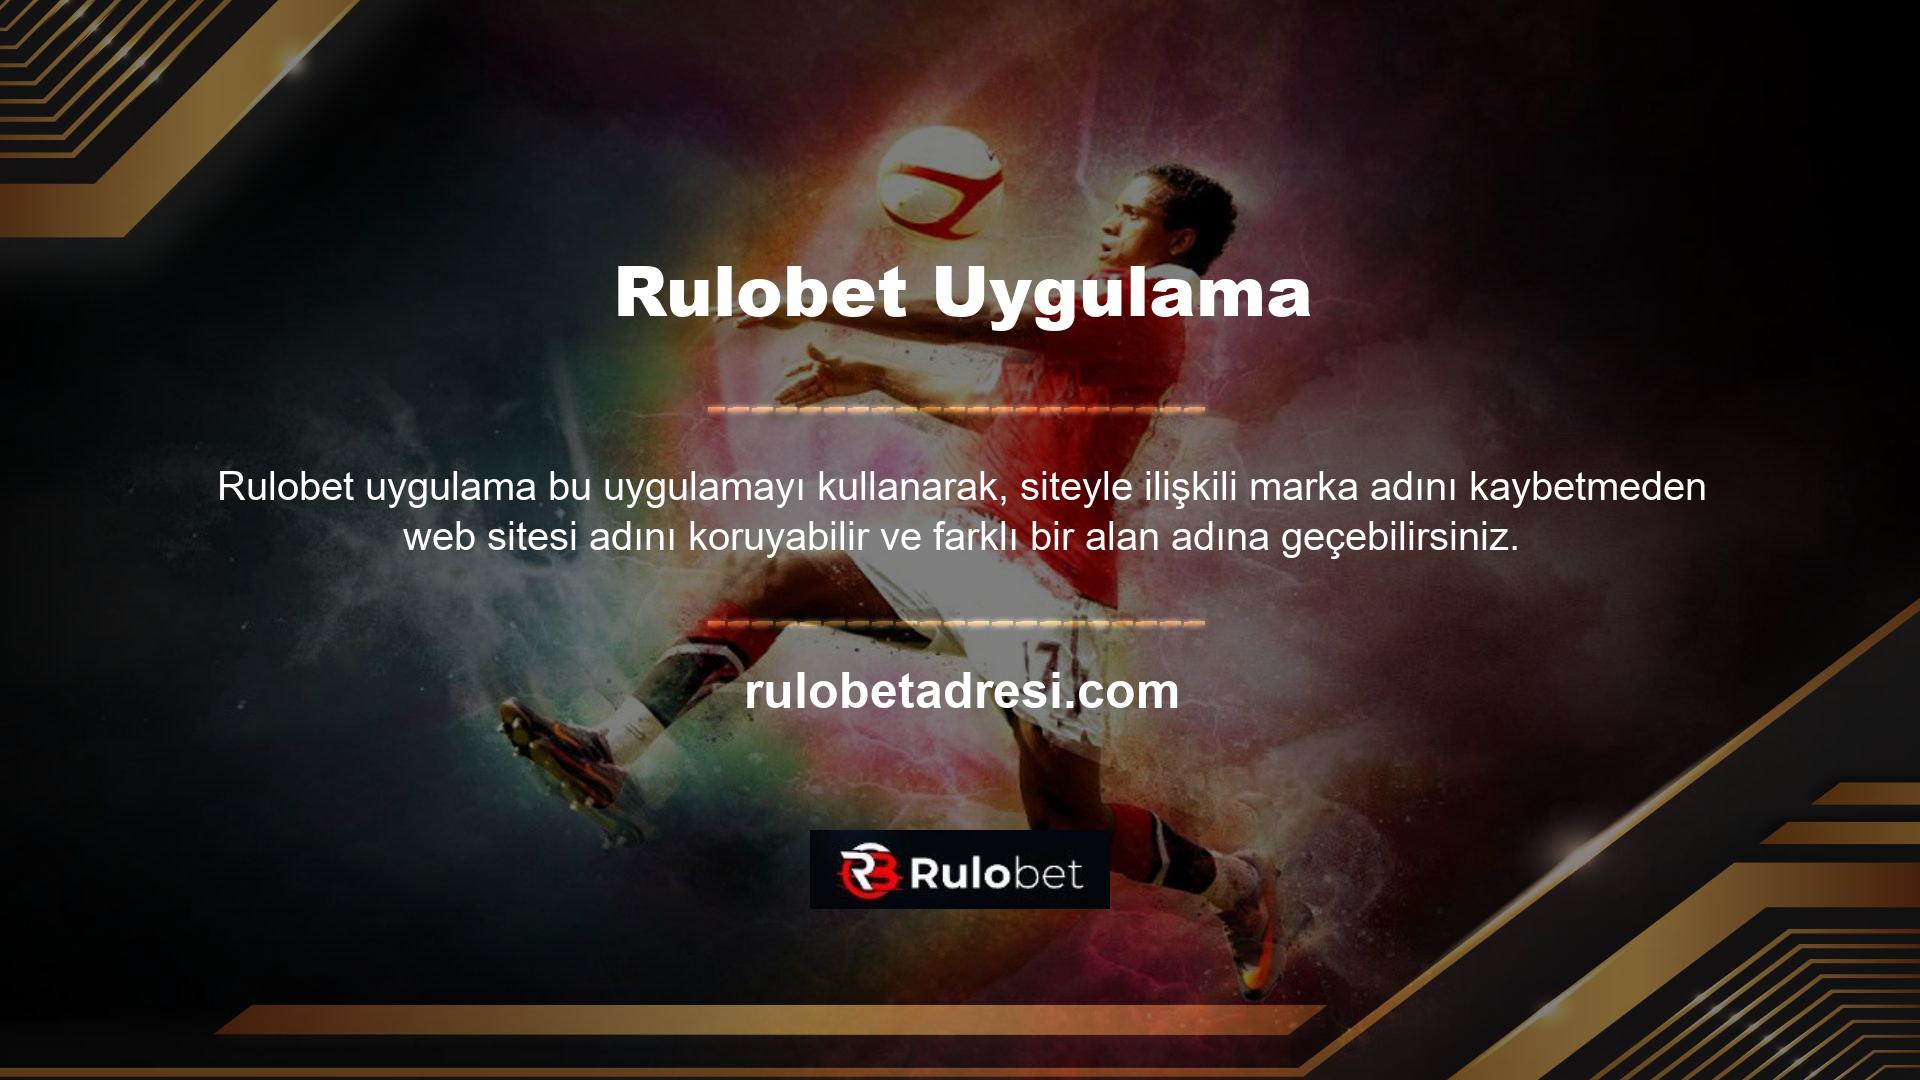 Son zamanlarda Rulobet, özellikle Türkiye'deki kullanıcıların oturum açma sorunları nedeniyle haftada 3 defaya kadar erişimde zorluk yaşıyor